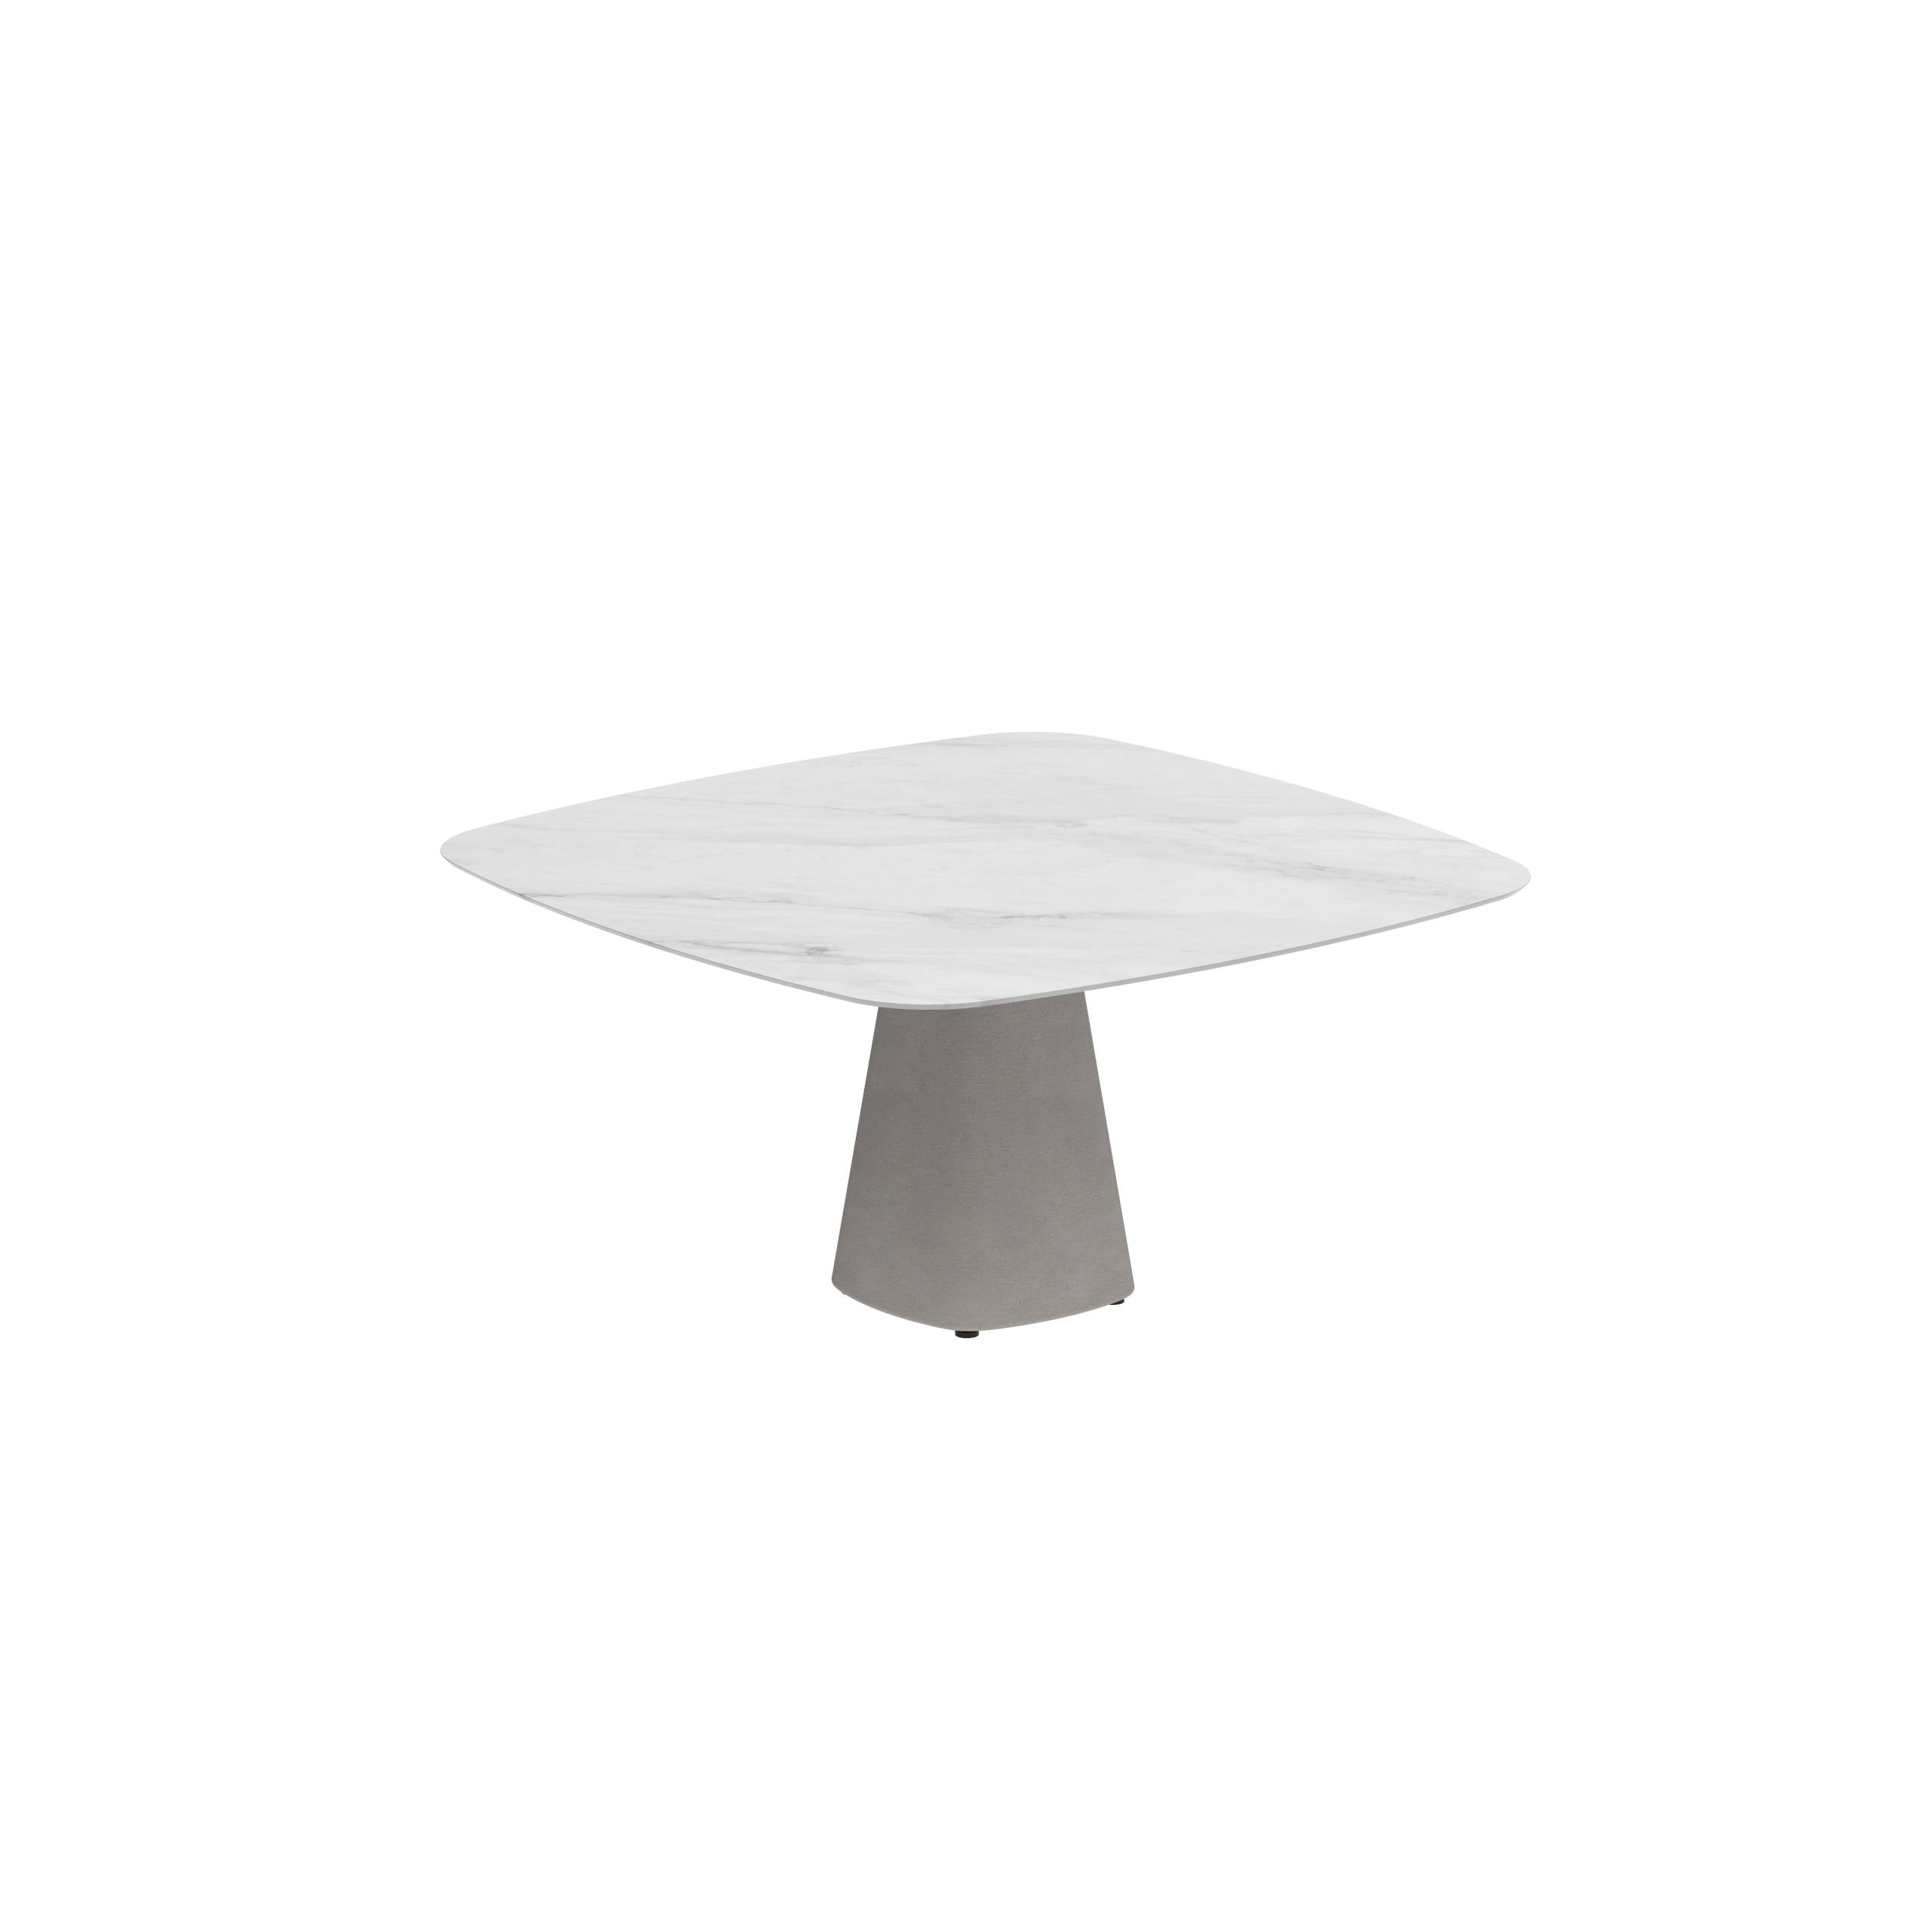 Conix Table 150x150 Cm Legs Concrete Cement Grey - Table Top Ceramic Bianco Statuario